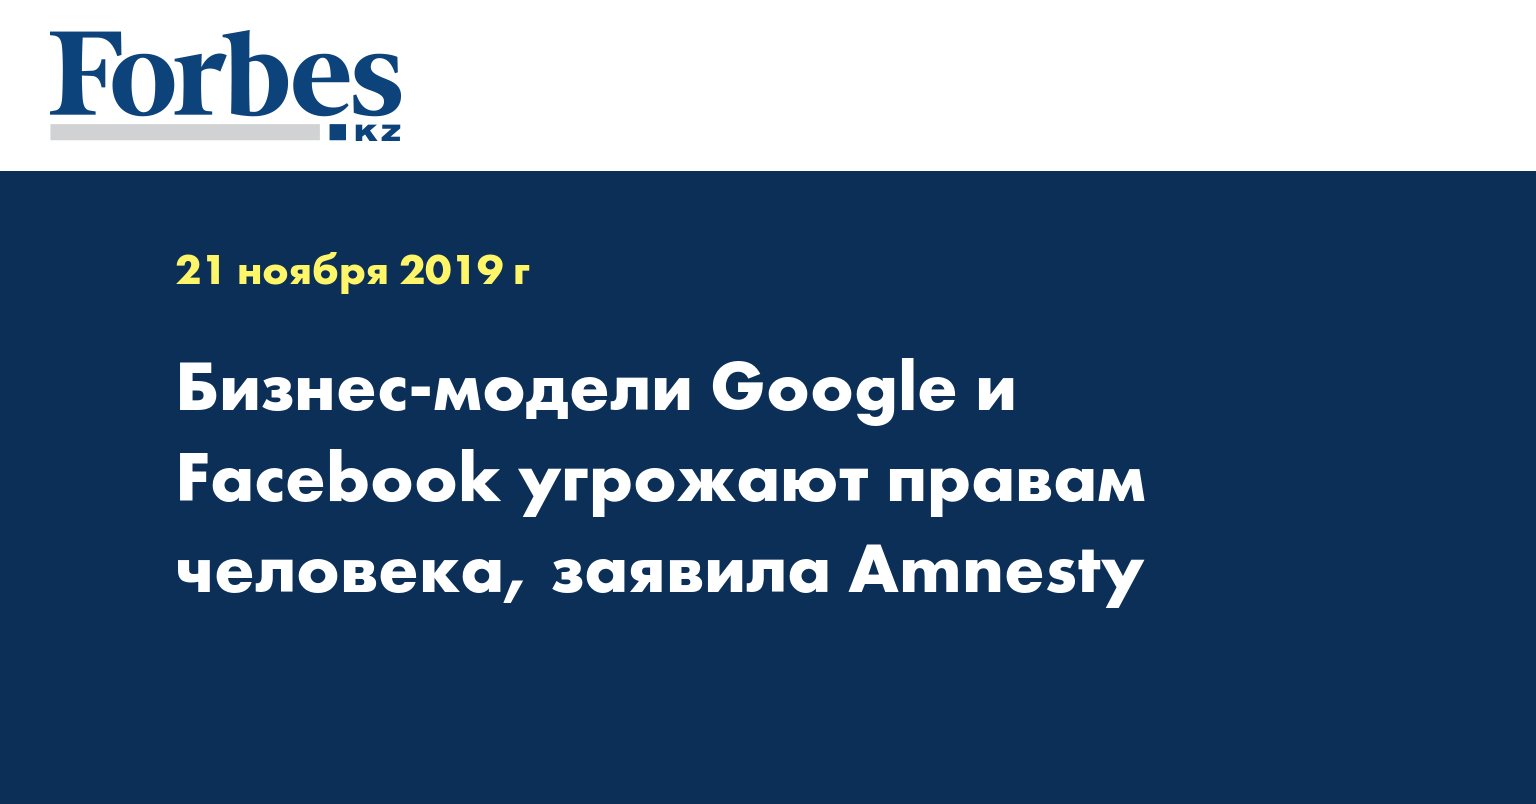 Бизнес-модели Google и Facebook угрожают правам человека, заявила Amnesty